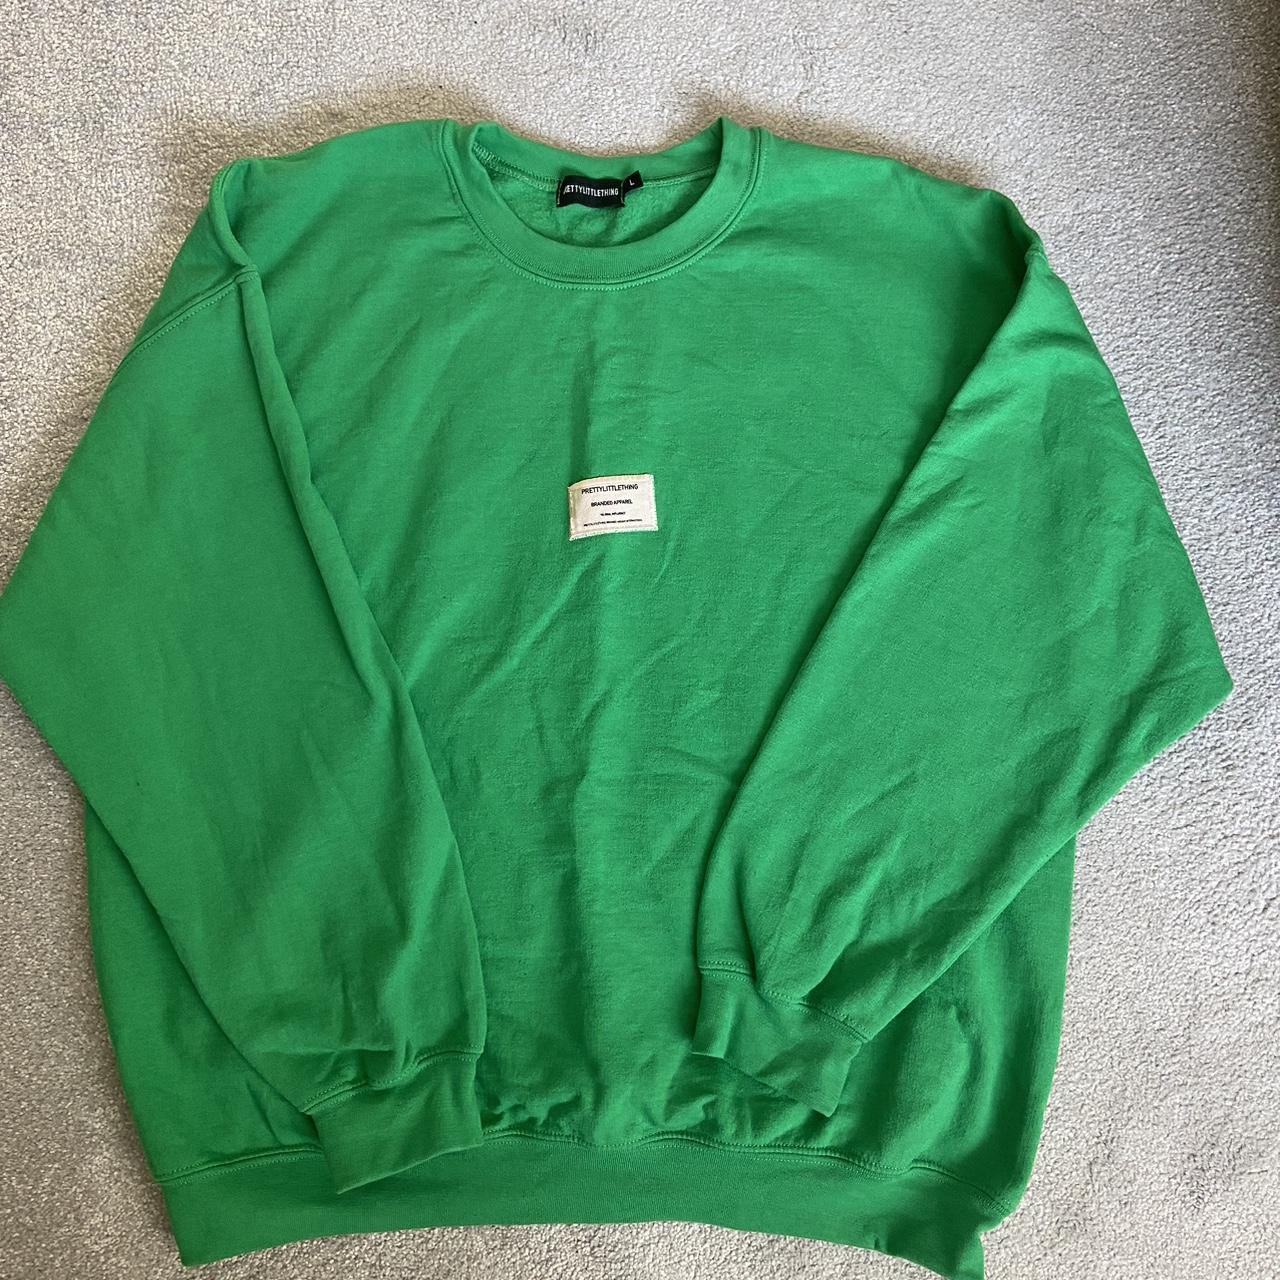 PrettyLittleThing Women's Green Sweatshirt | Depop